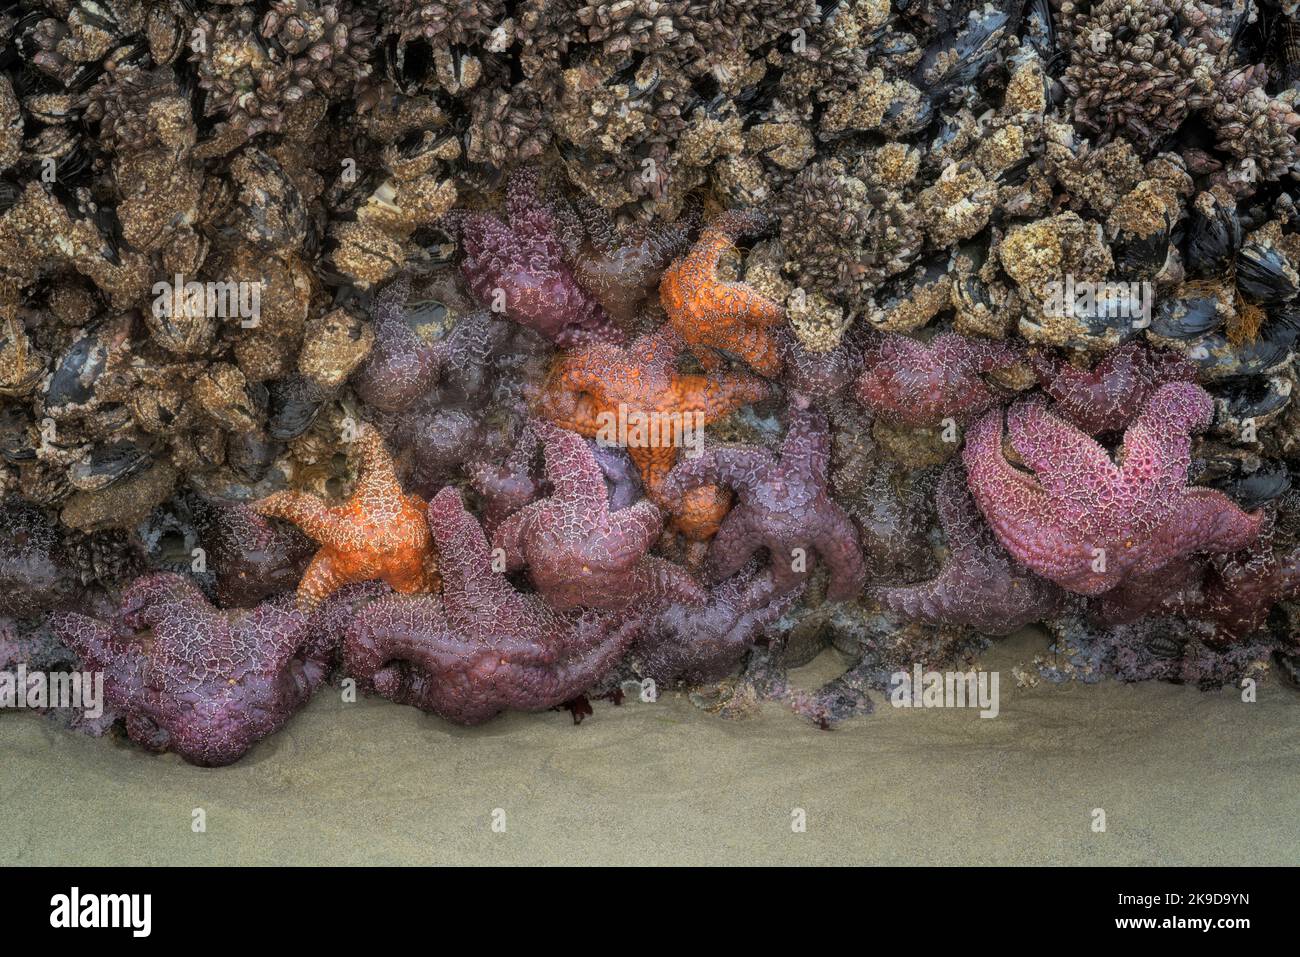 Des étoiles de mer colorées et des anémones de mer vertes exposées pendant un bref moment au cours de cet été moins événement de marée basse accrochant aux roches de basalte Banque D'Images